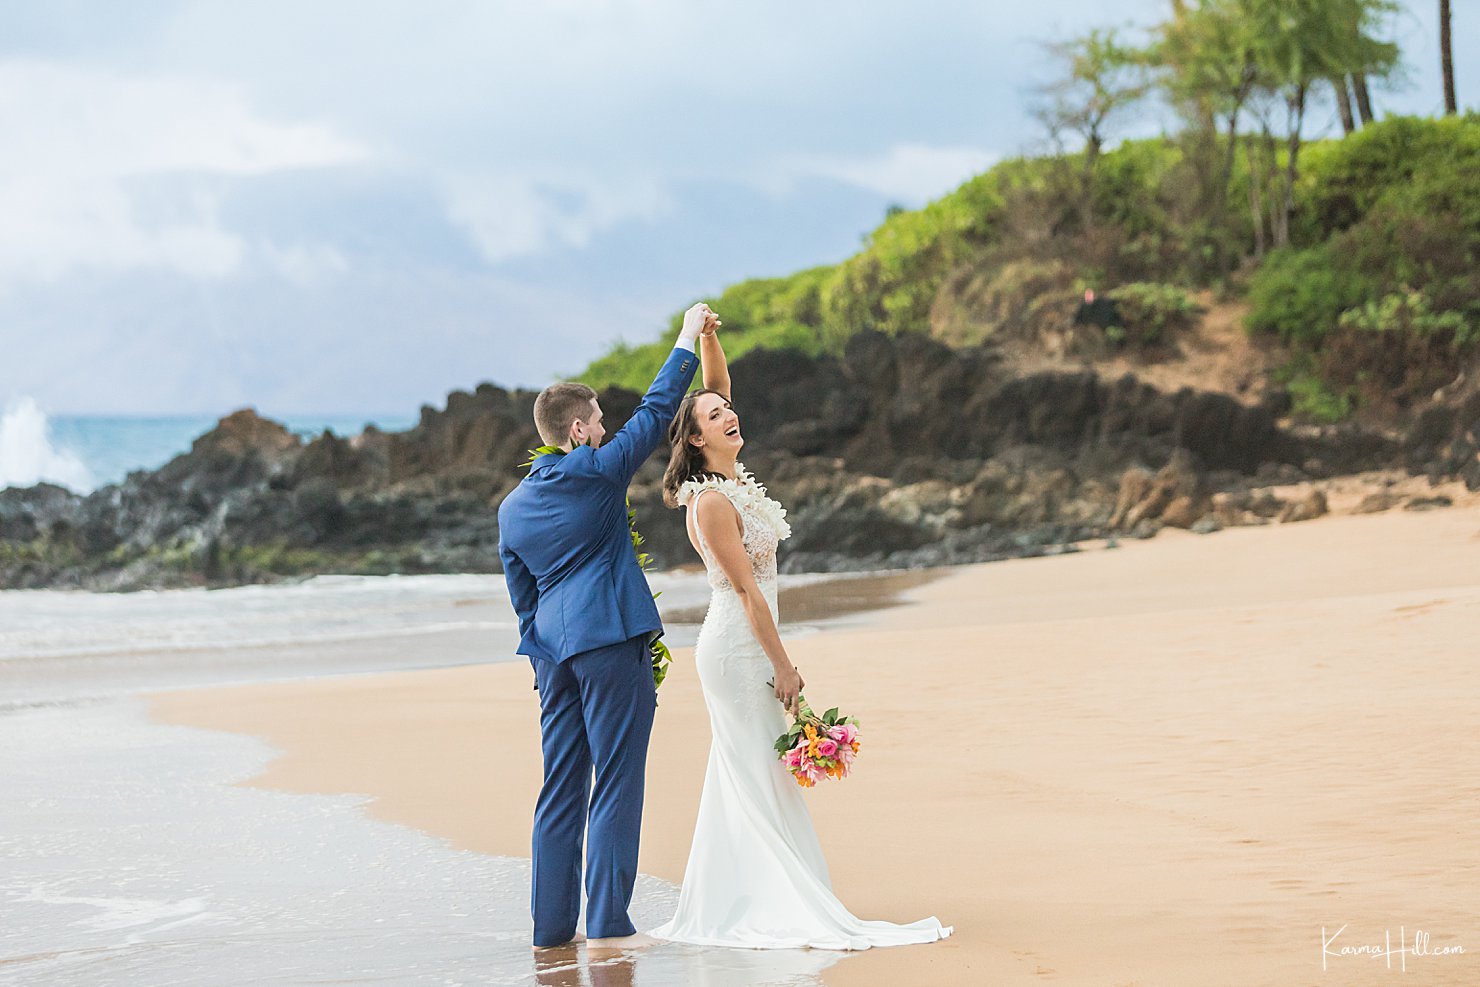 fun elopement in Maui